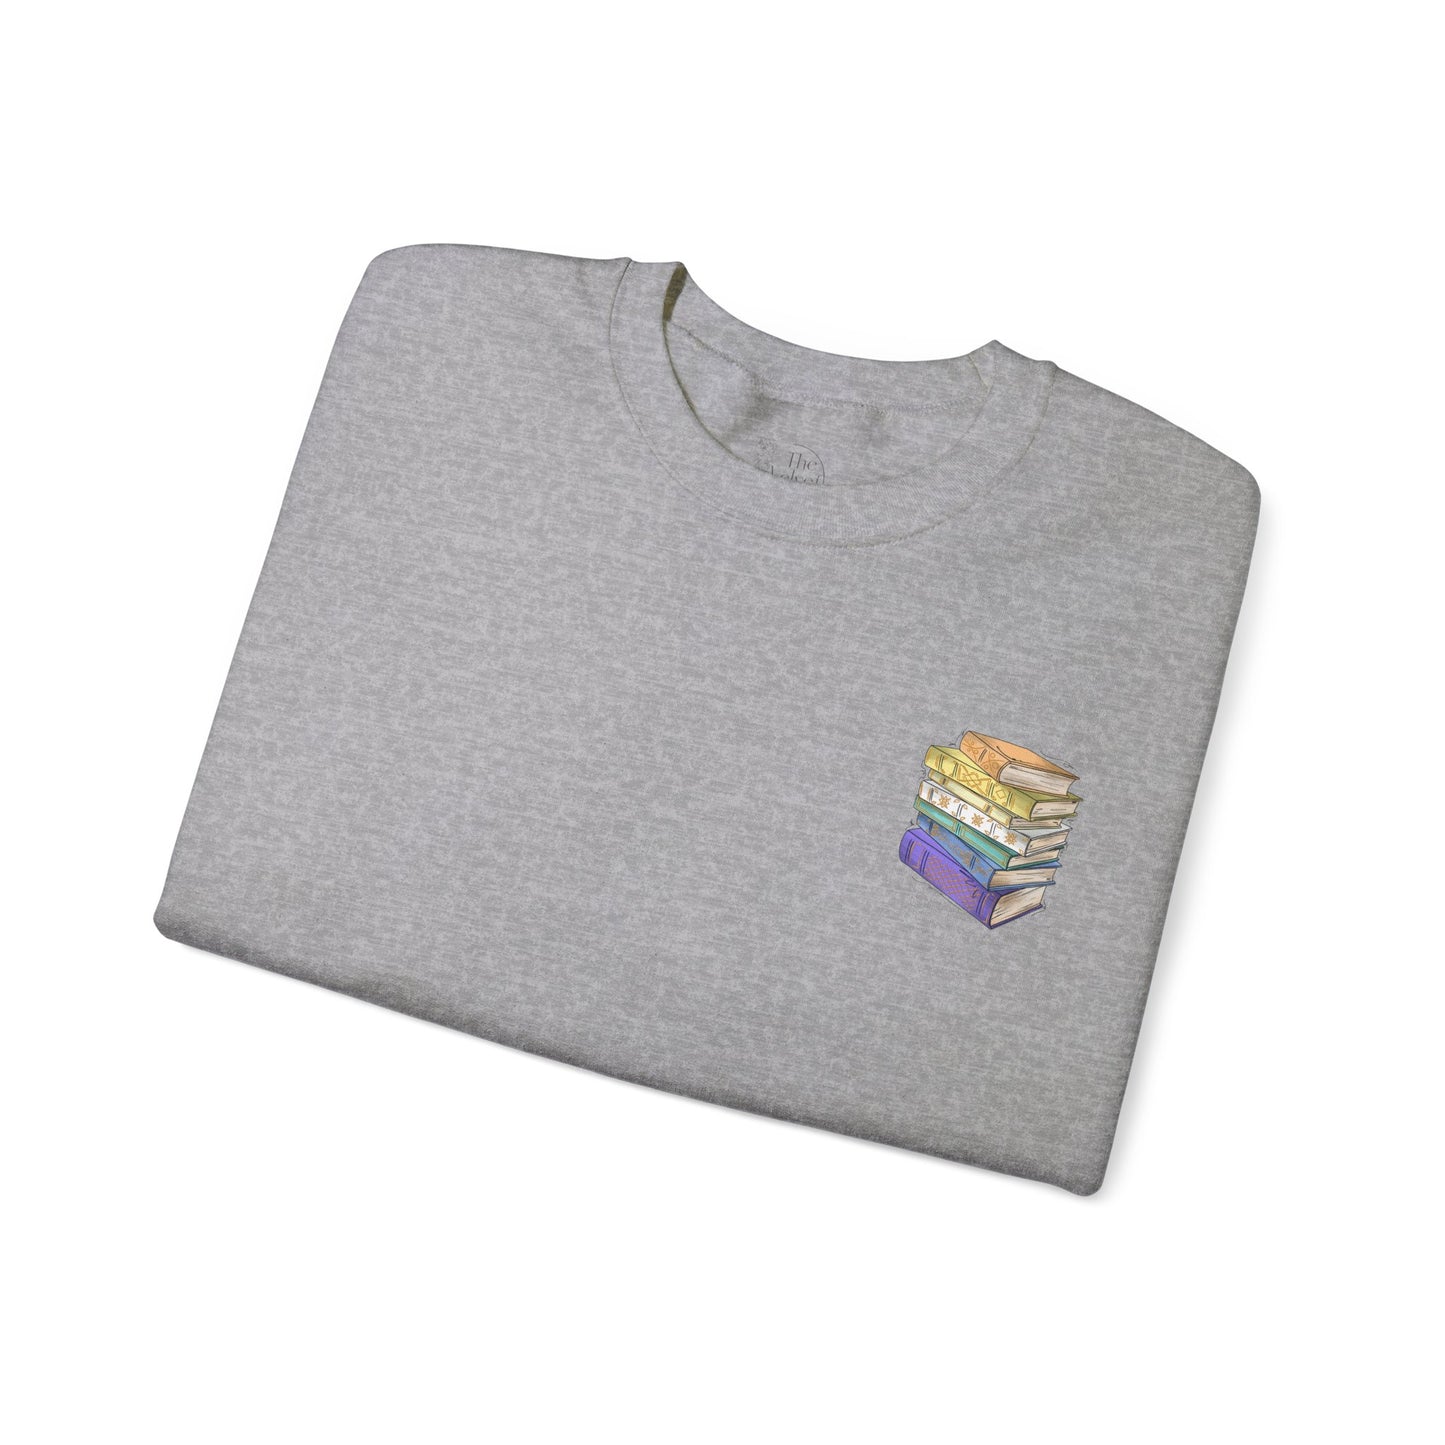 Genderfaun Pride Flag Old Books - Adult Unisex Sweatshirt